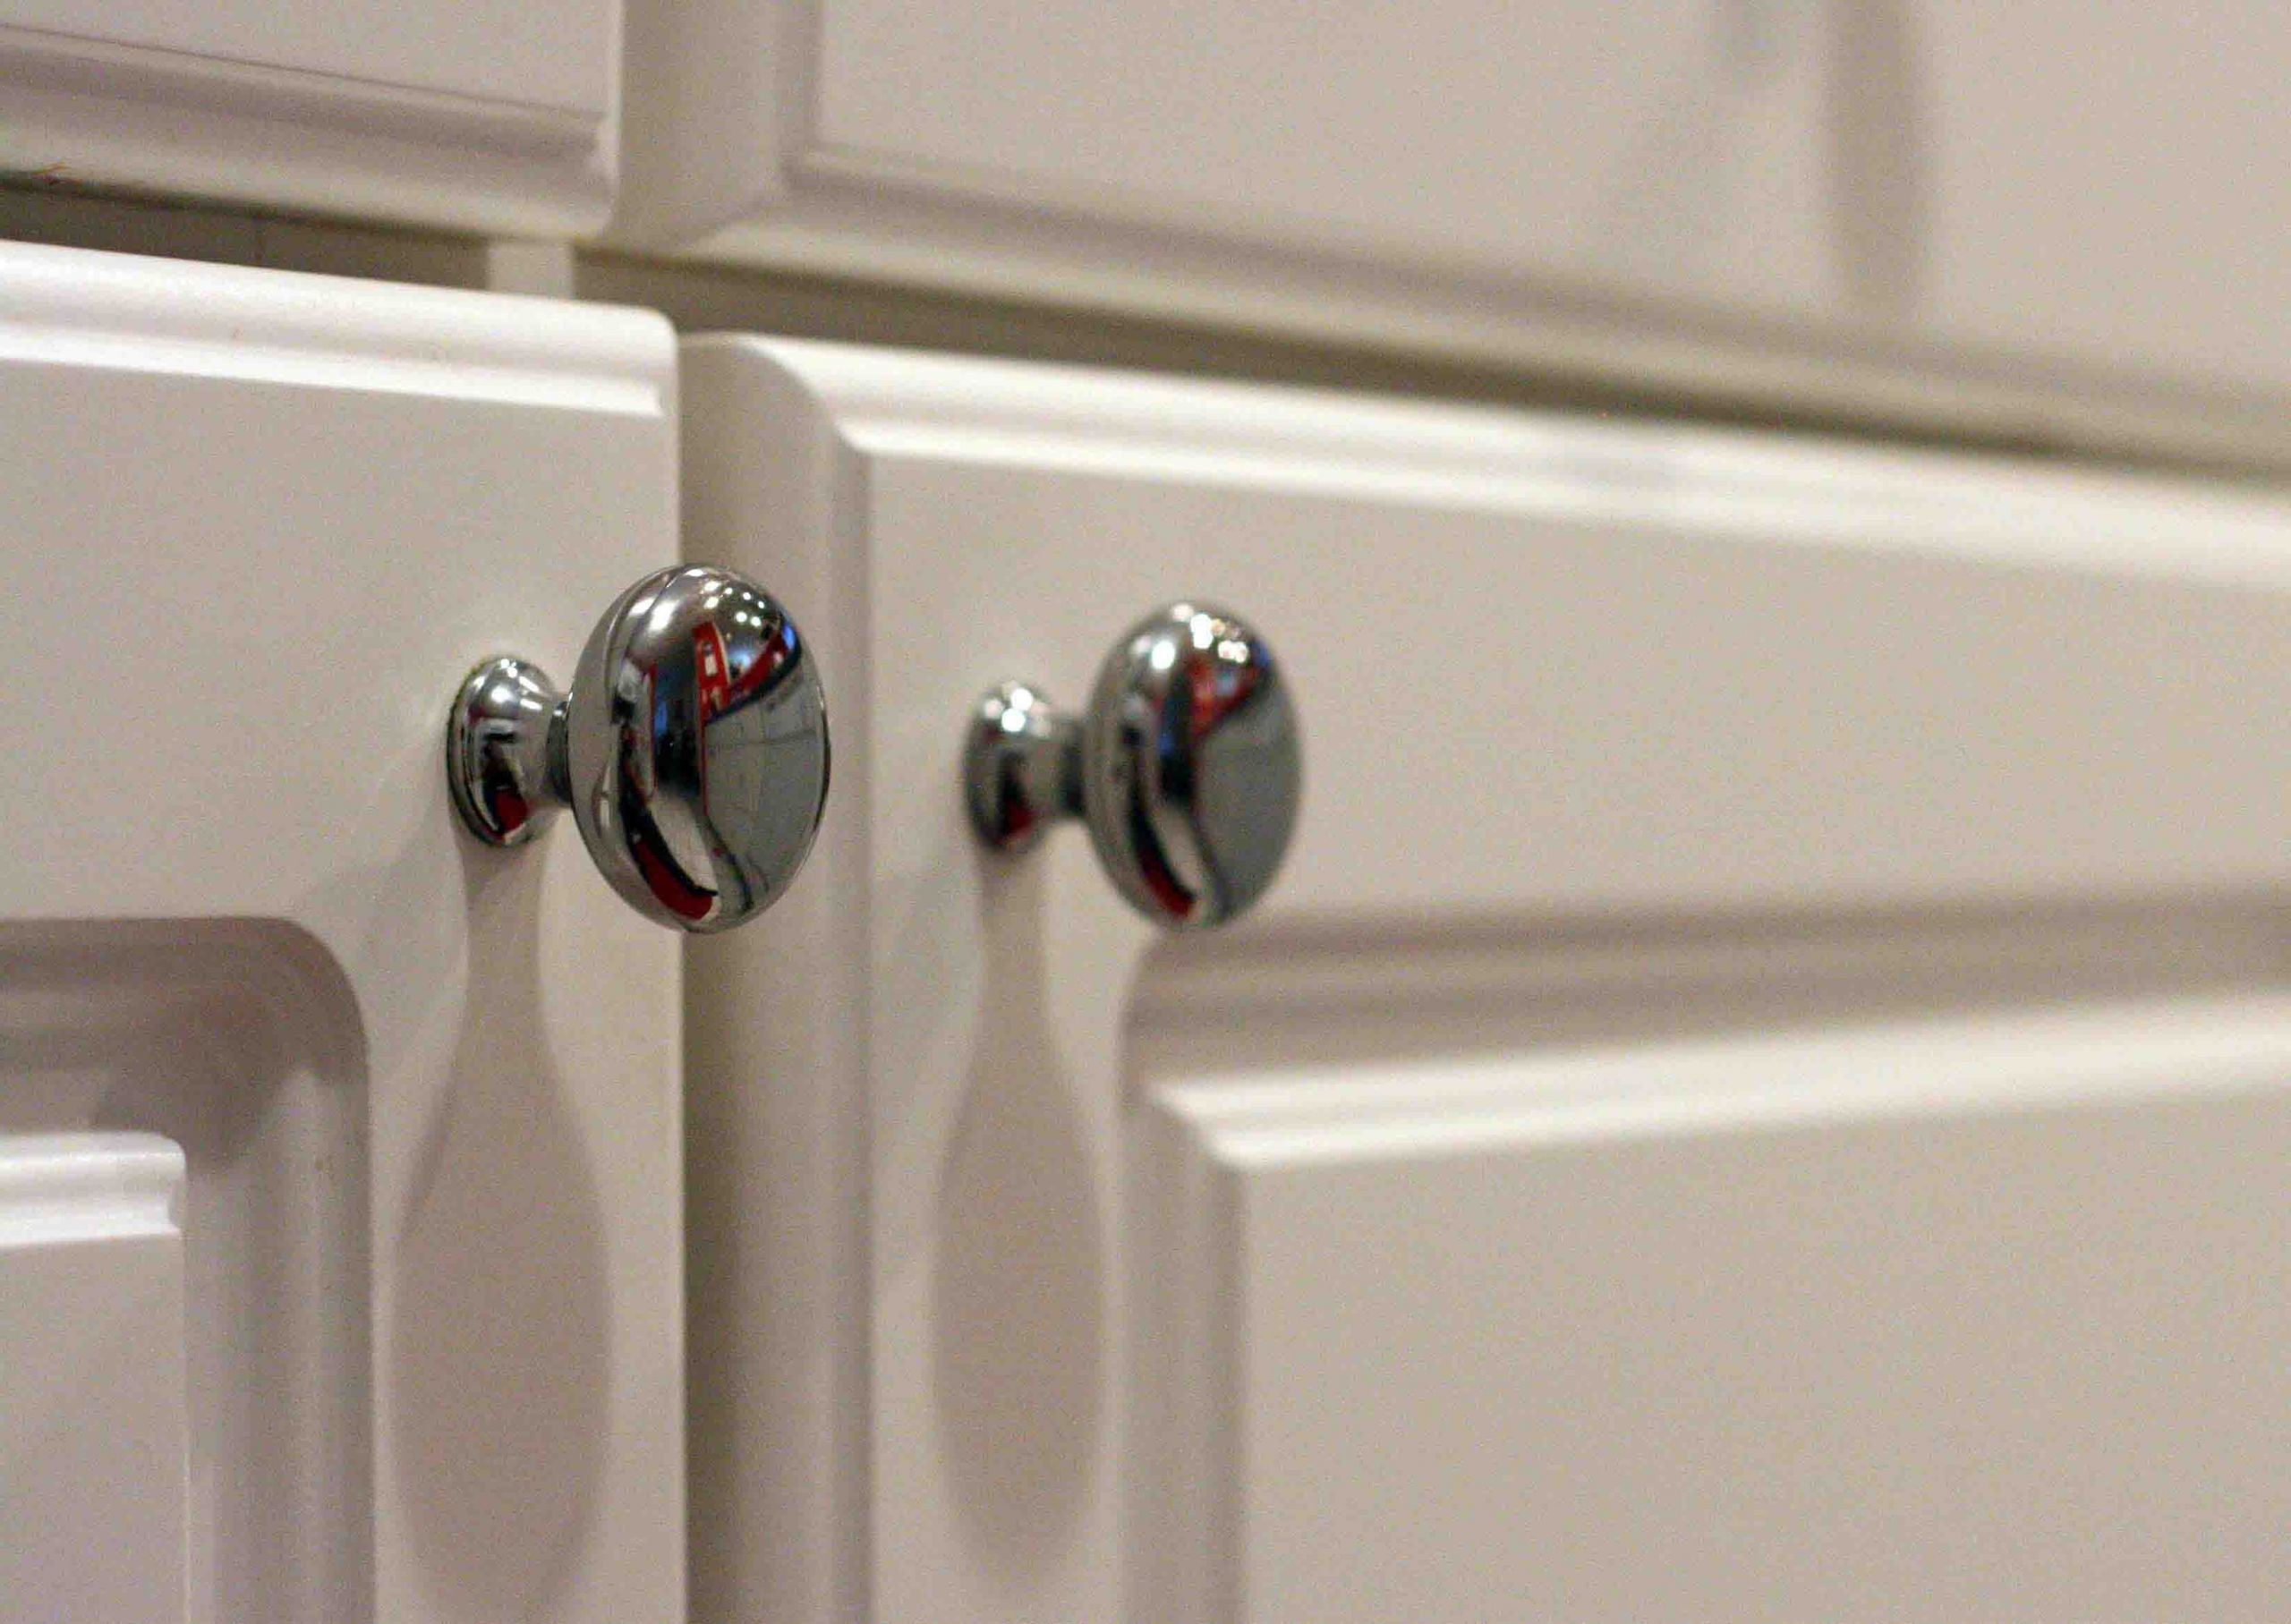 Kitchen Cabinet Door Handles
 Choose The Best Contemporary Kitchen Cabinet Door Handles